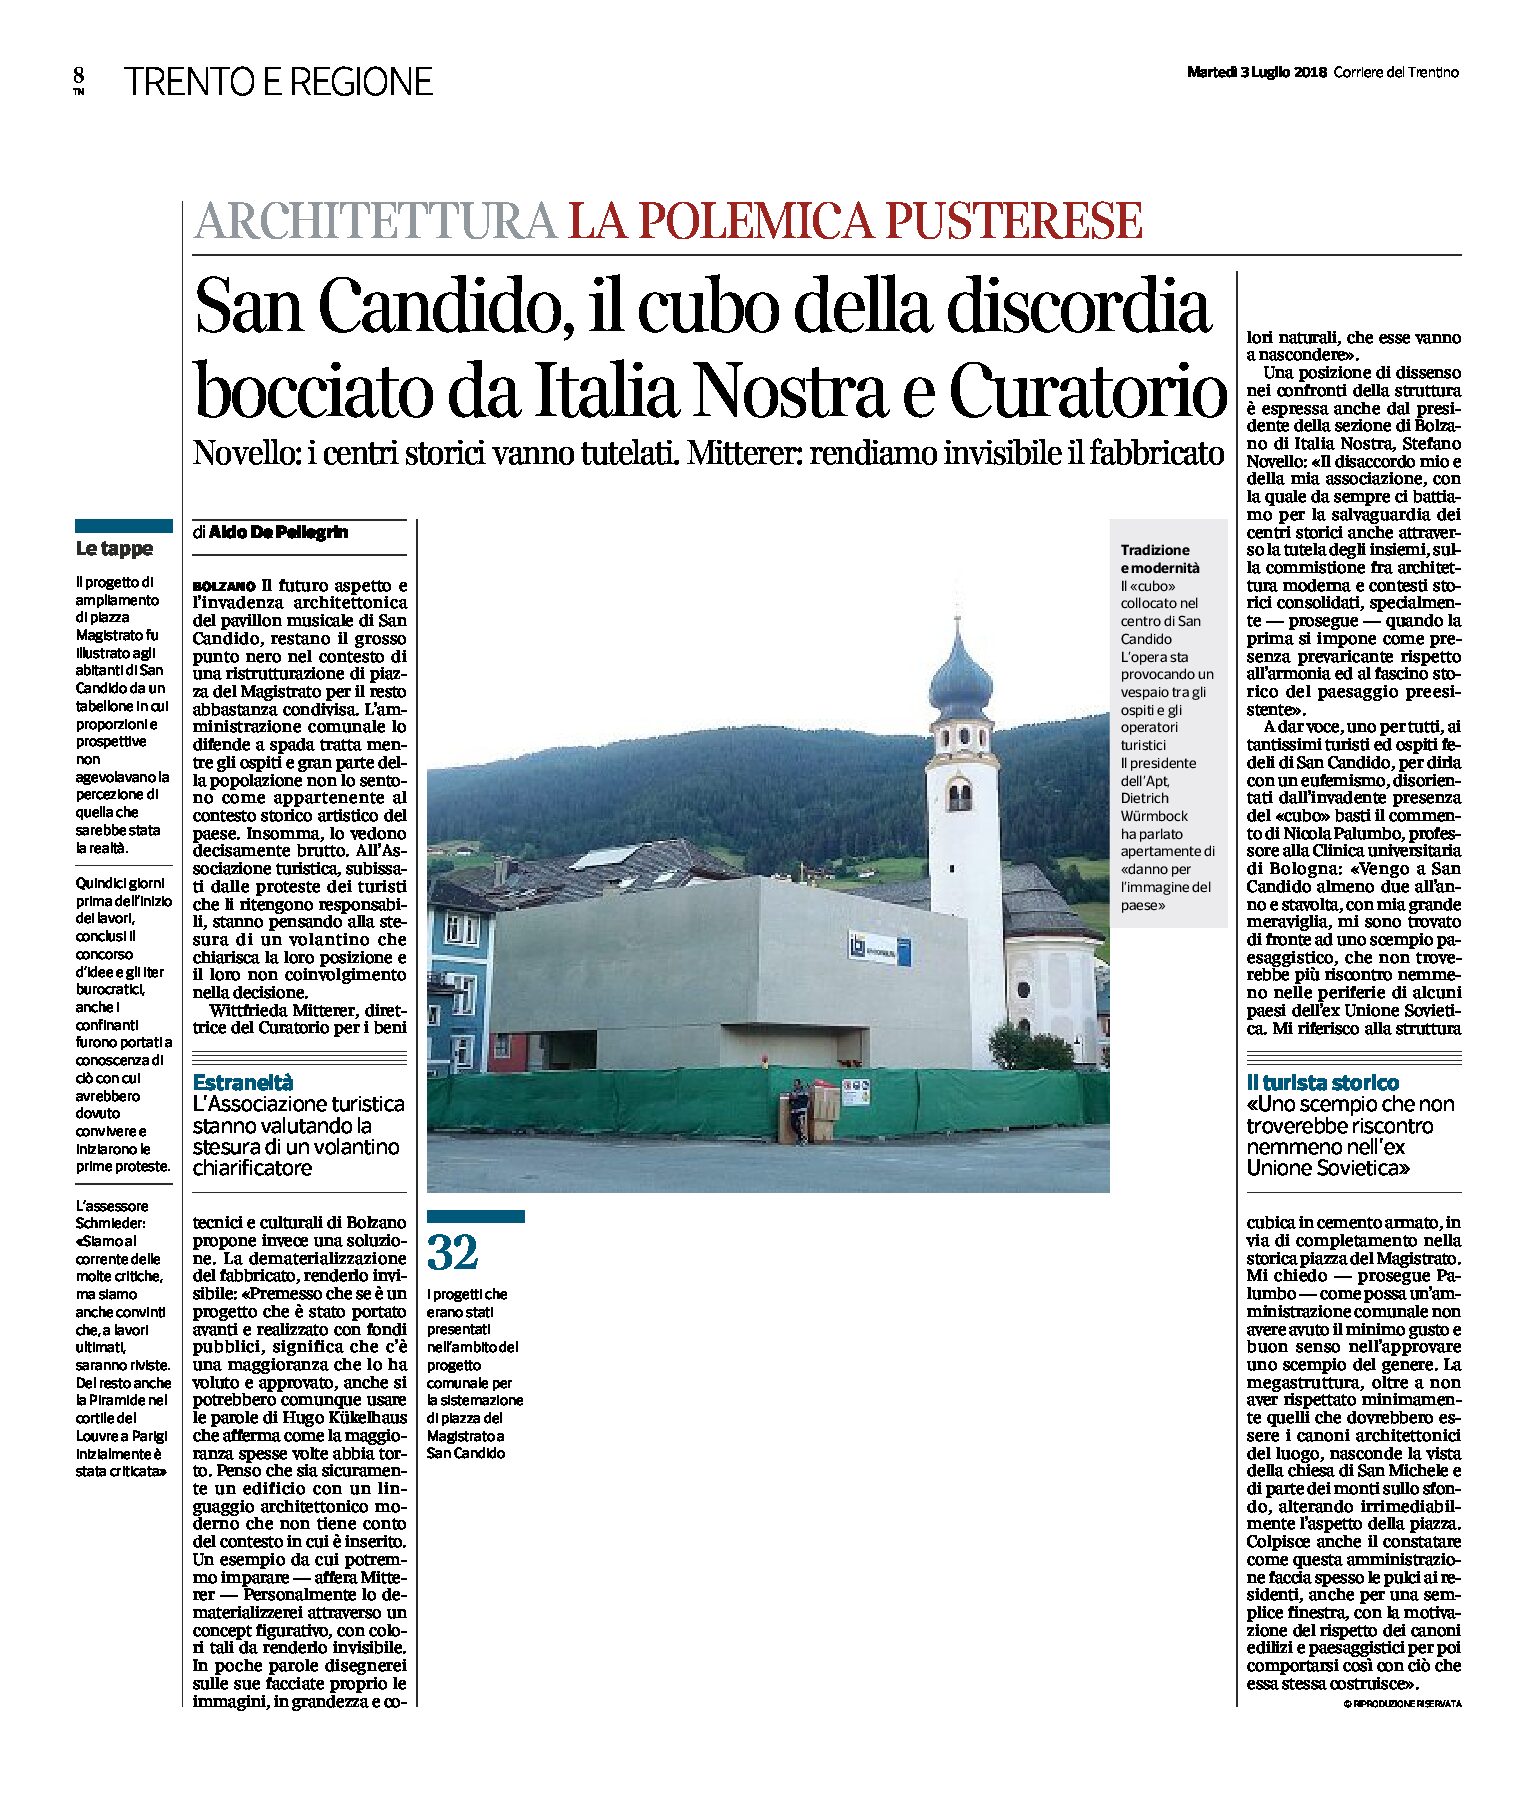 San Candido: il cubo della discordia, bocciato da Italia Nostra e Curatorio